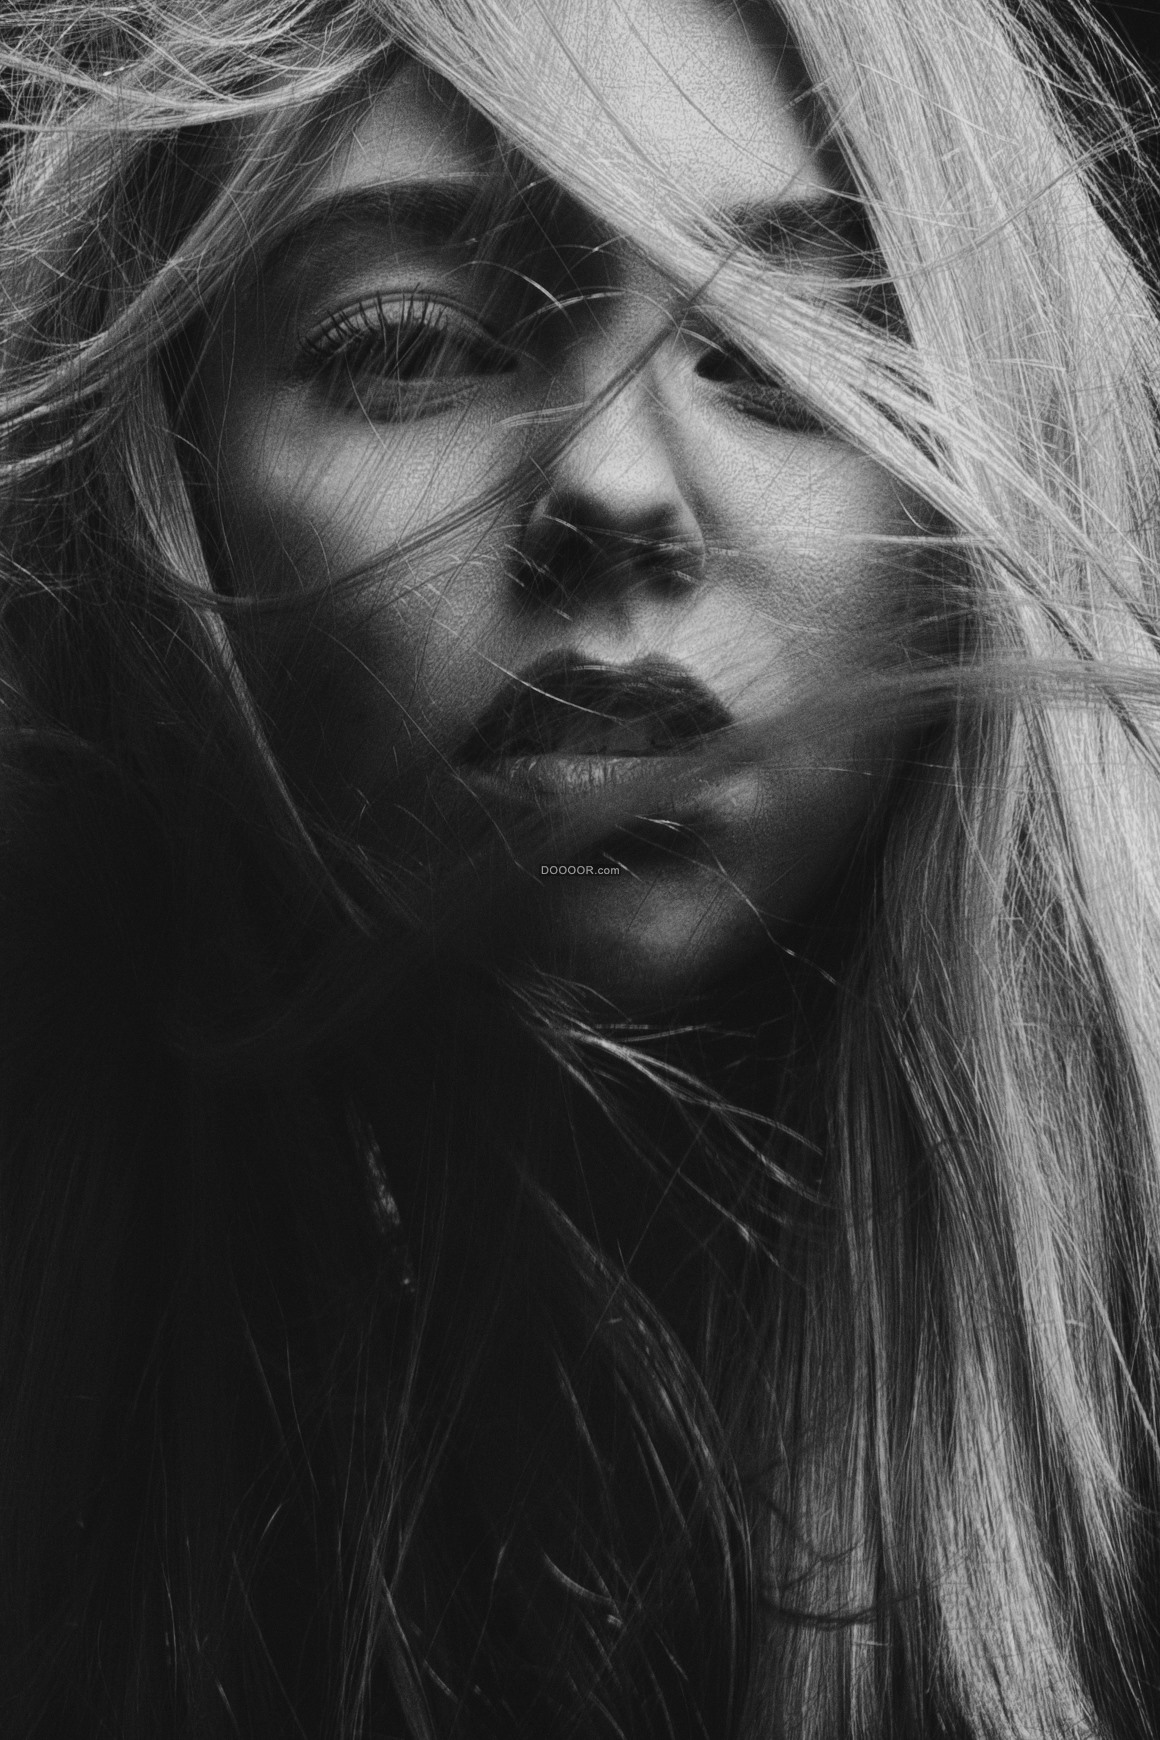 人物素材设计黑白镜头下美丽性感大眼睛女孩的秀发在风中凌乱